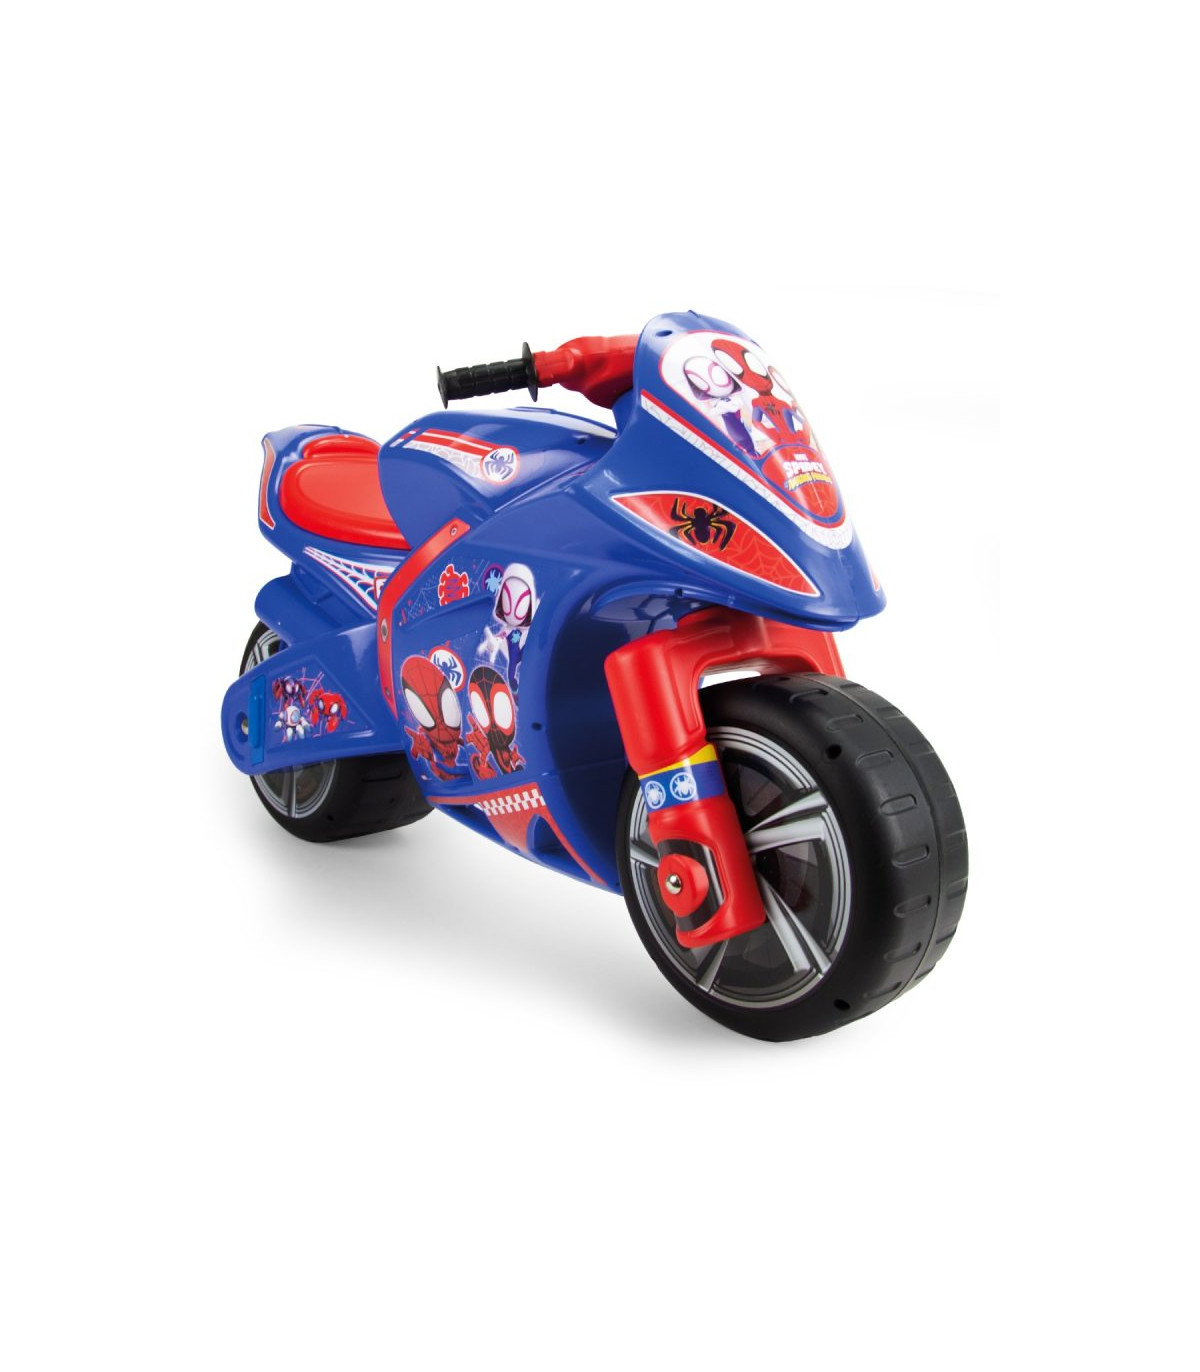 Porteur Neox Moto Spider-Man Injusa : King Jouet, Porteurs & Jouets à  bascules Injusa - Jeux d'éveil